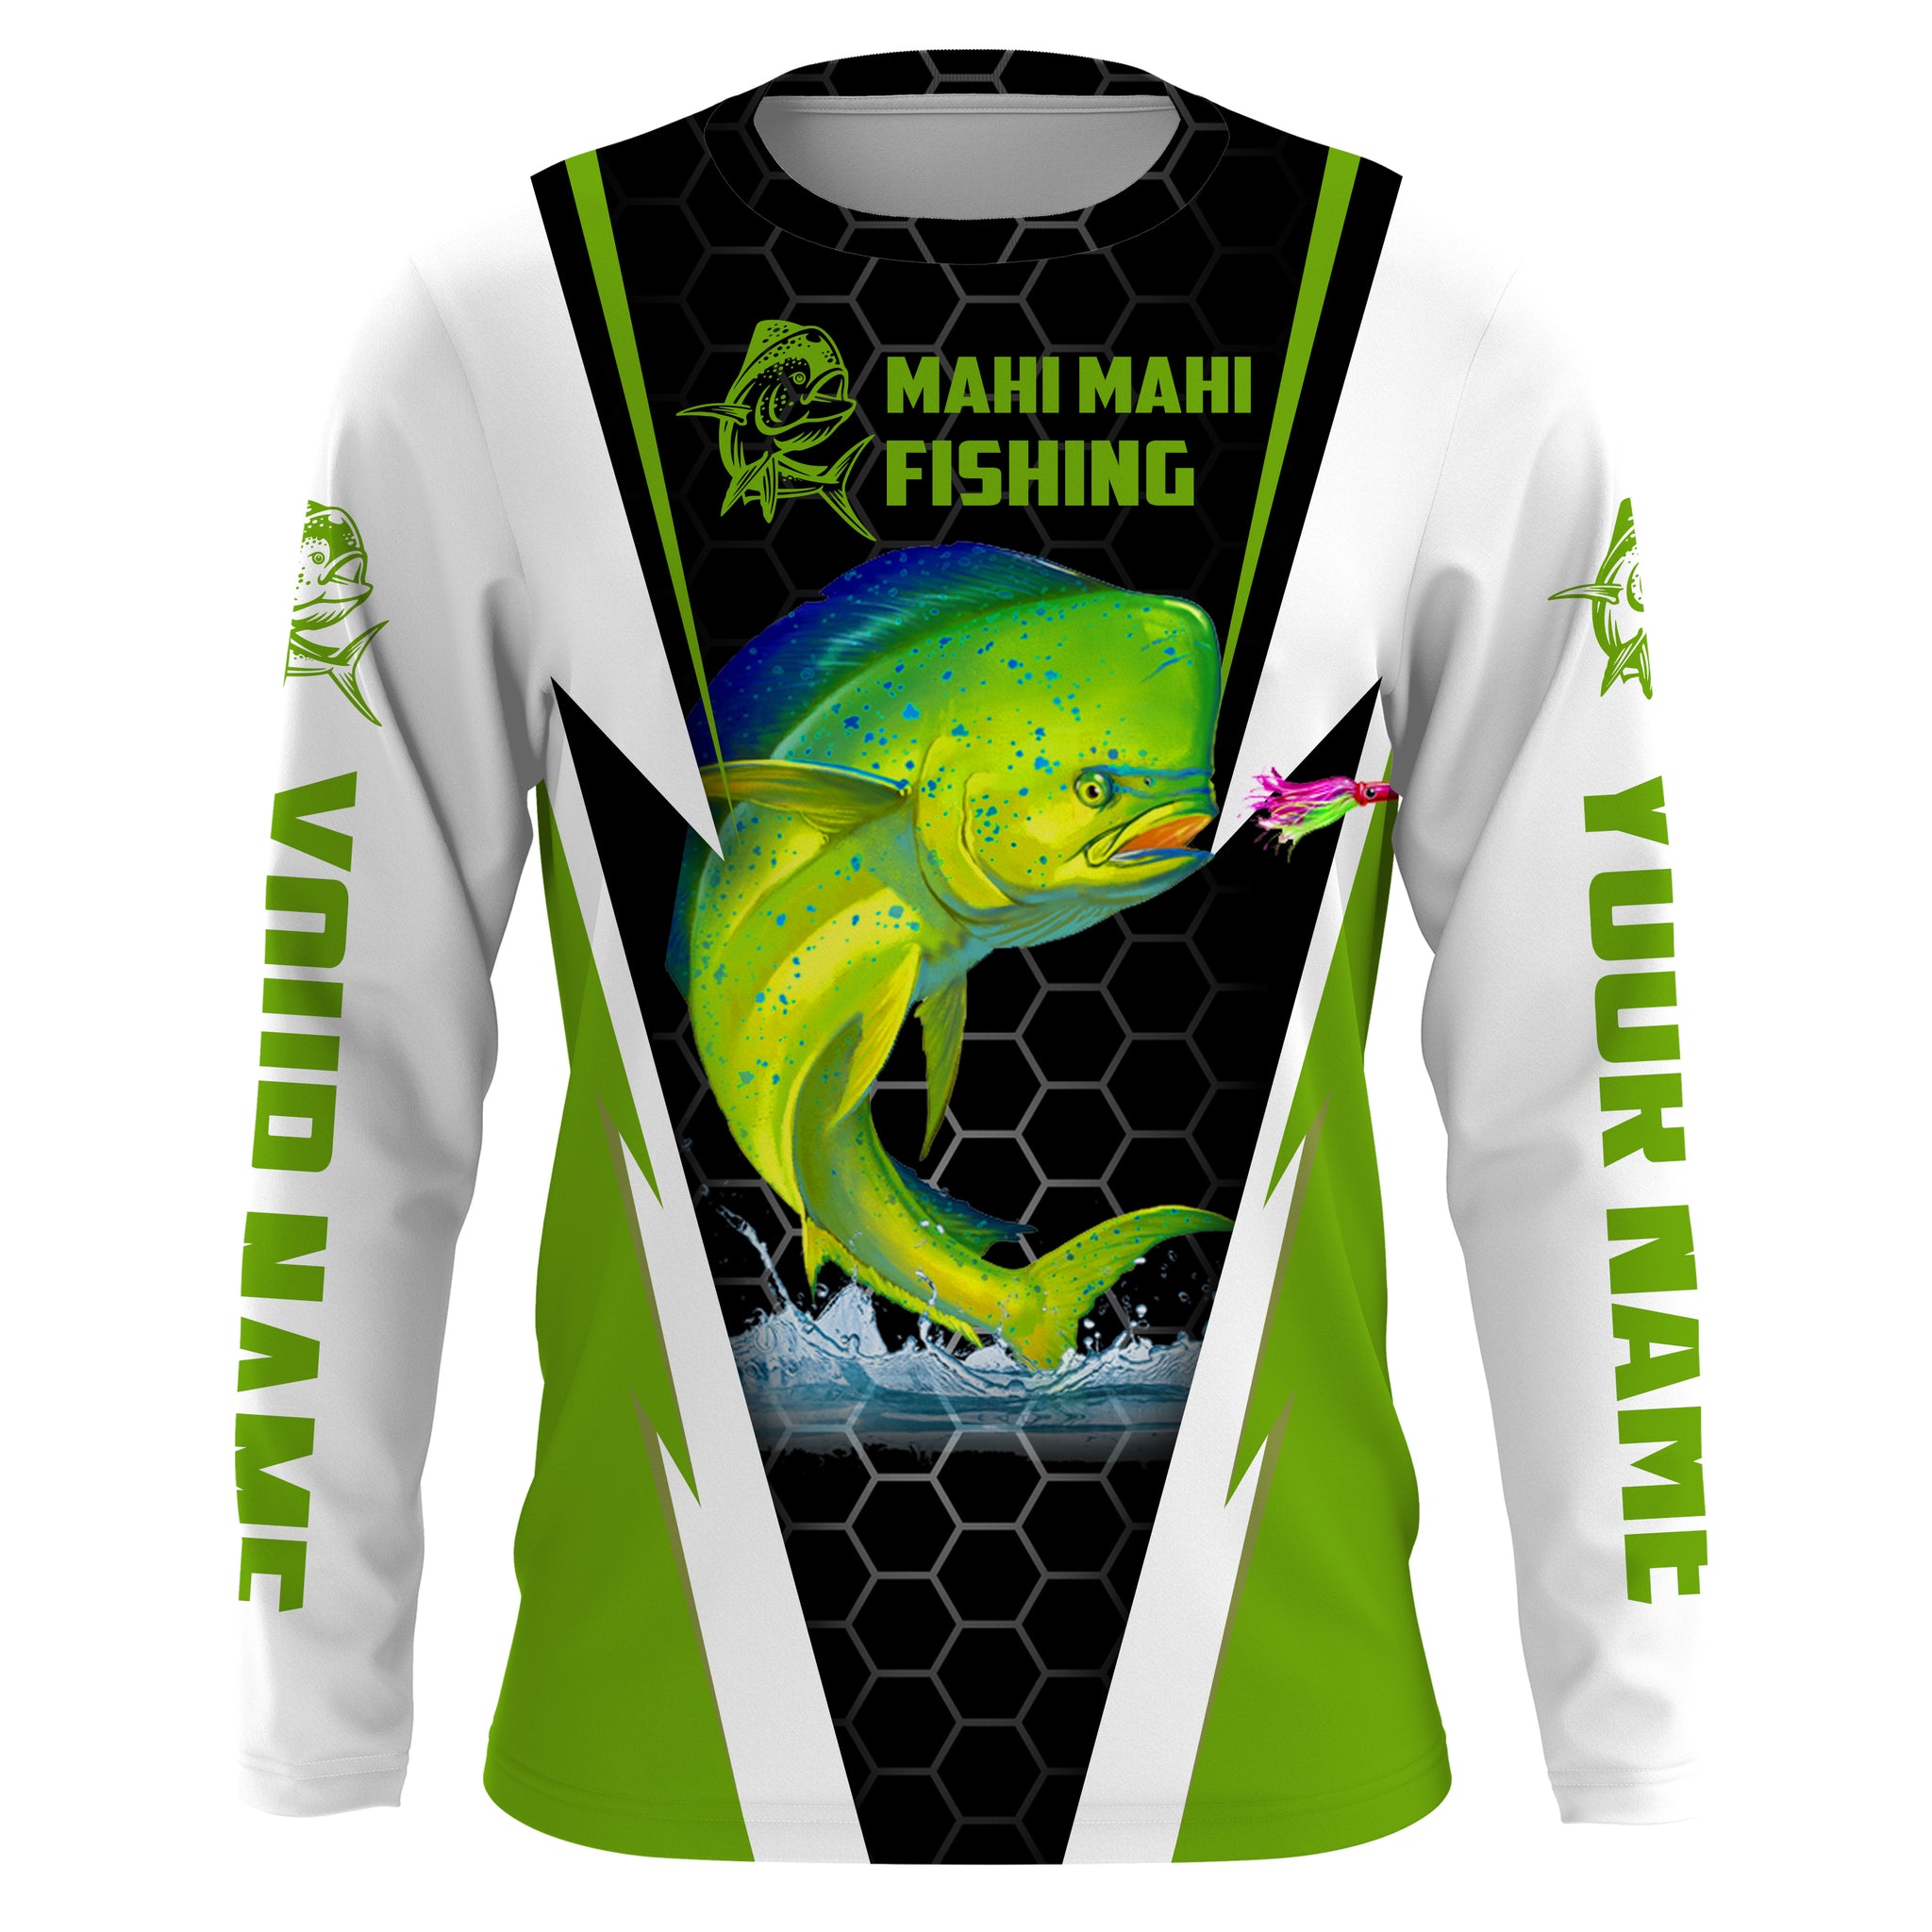 Personalized Mahi Mahi Fishing jerseys, Mahi Mahi Fishing Long